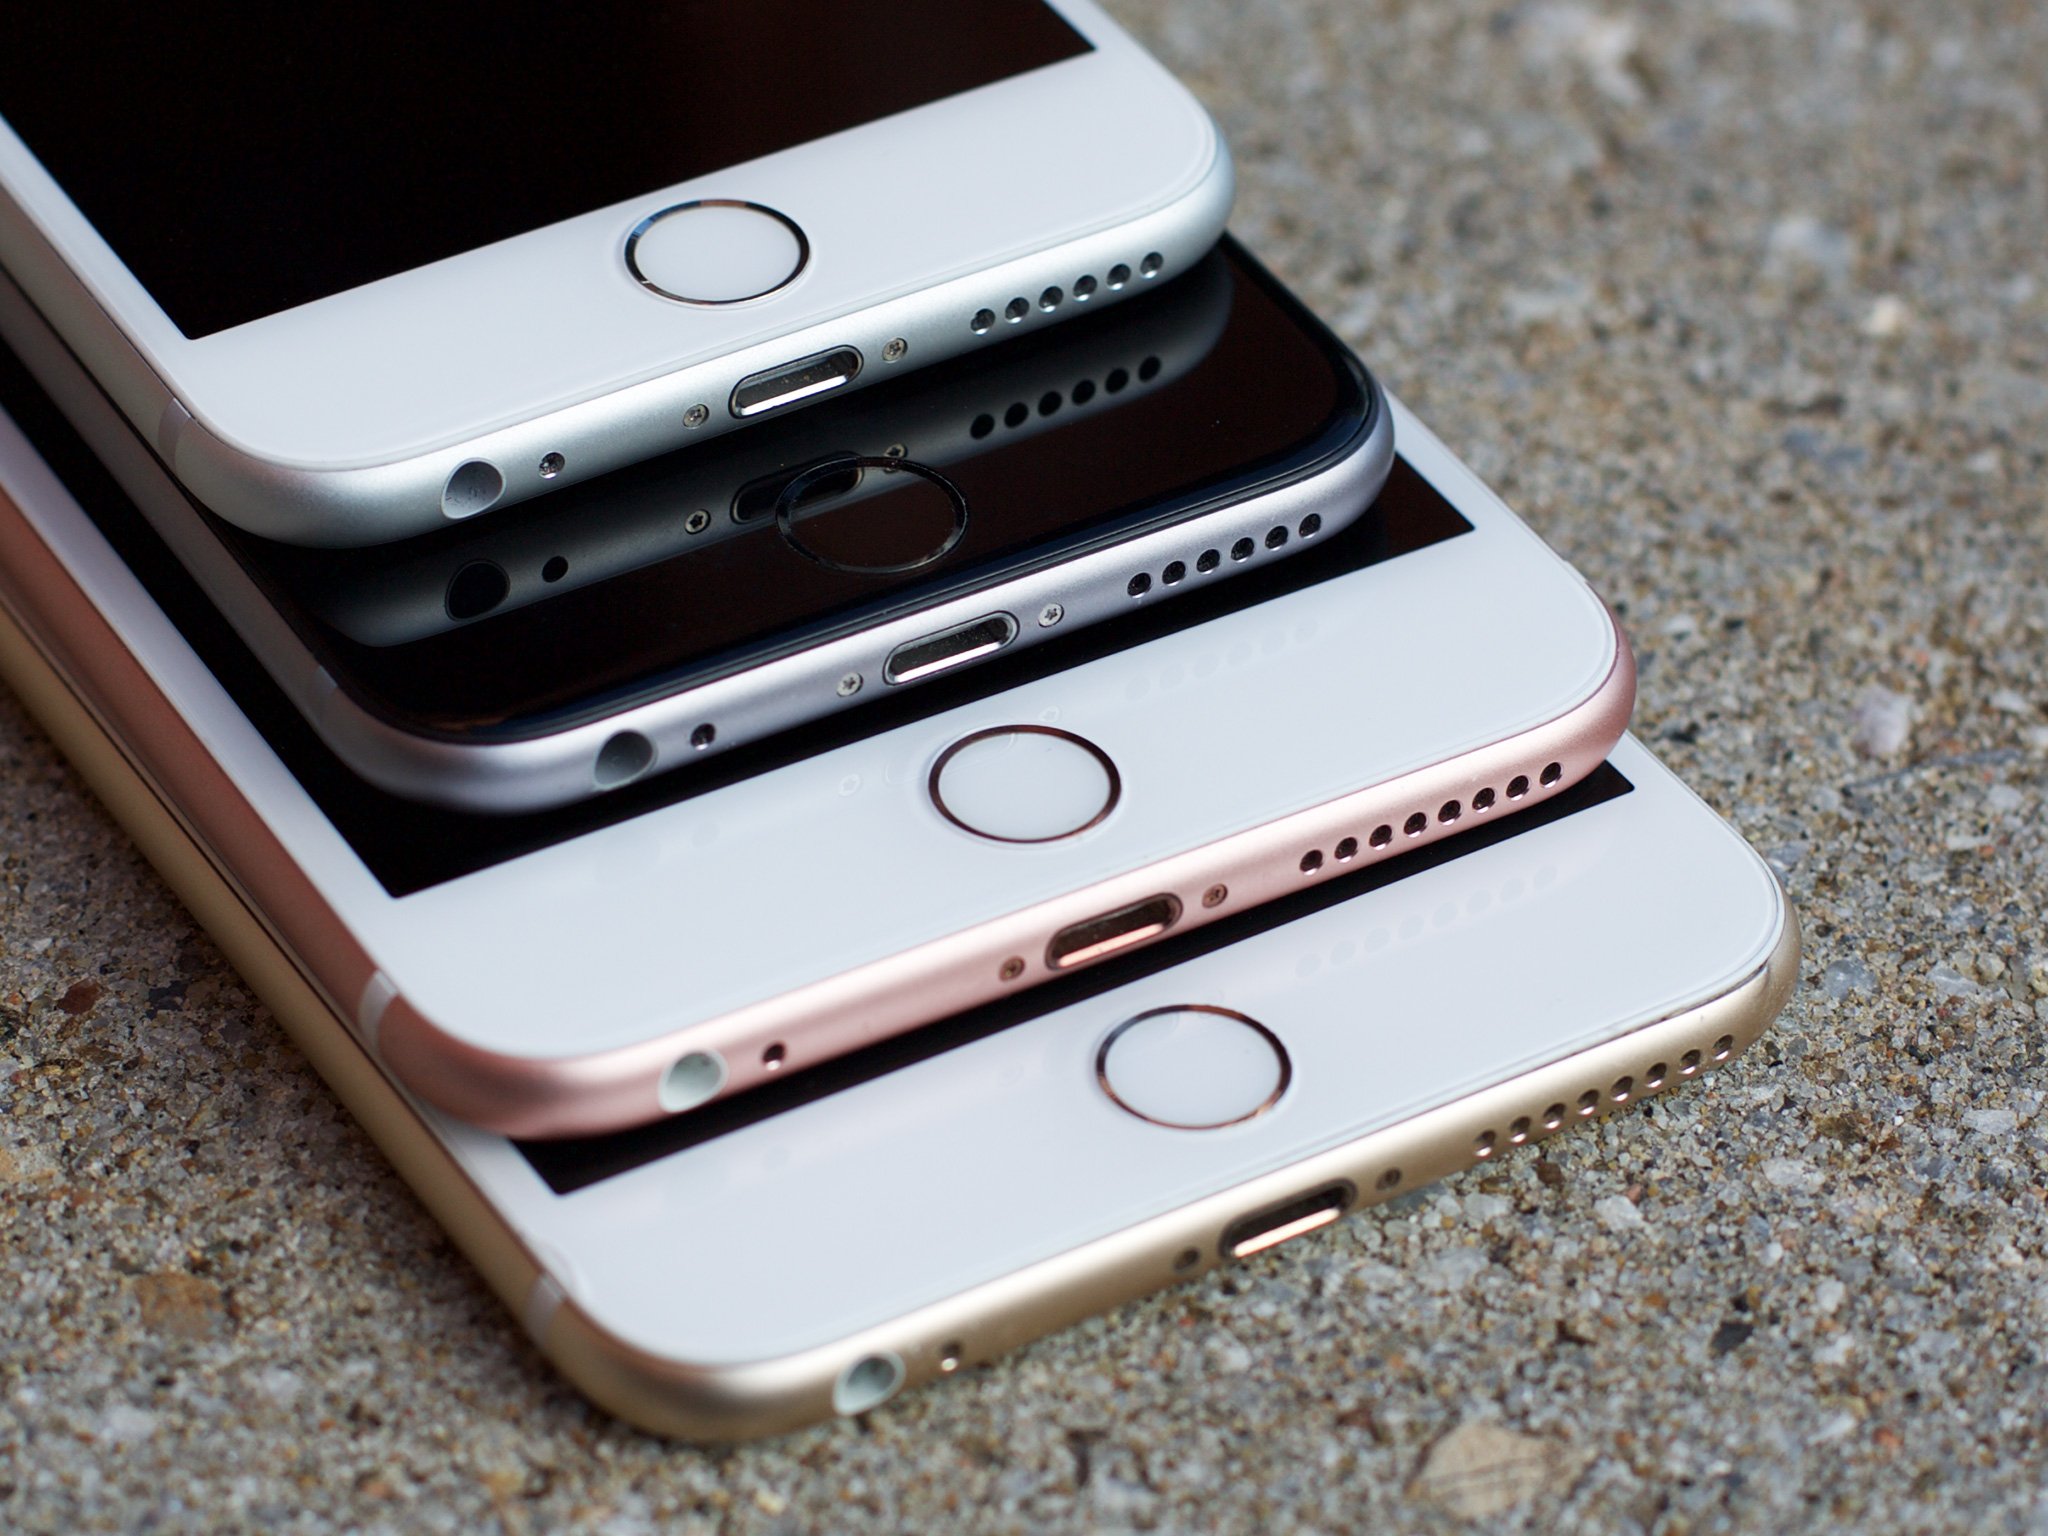 Apple sued by Australian regulators over bricked iPhones